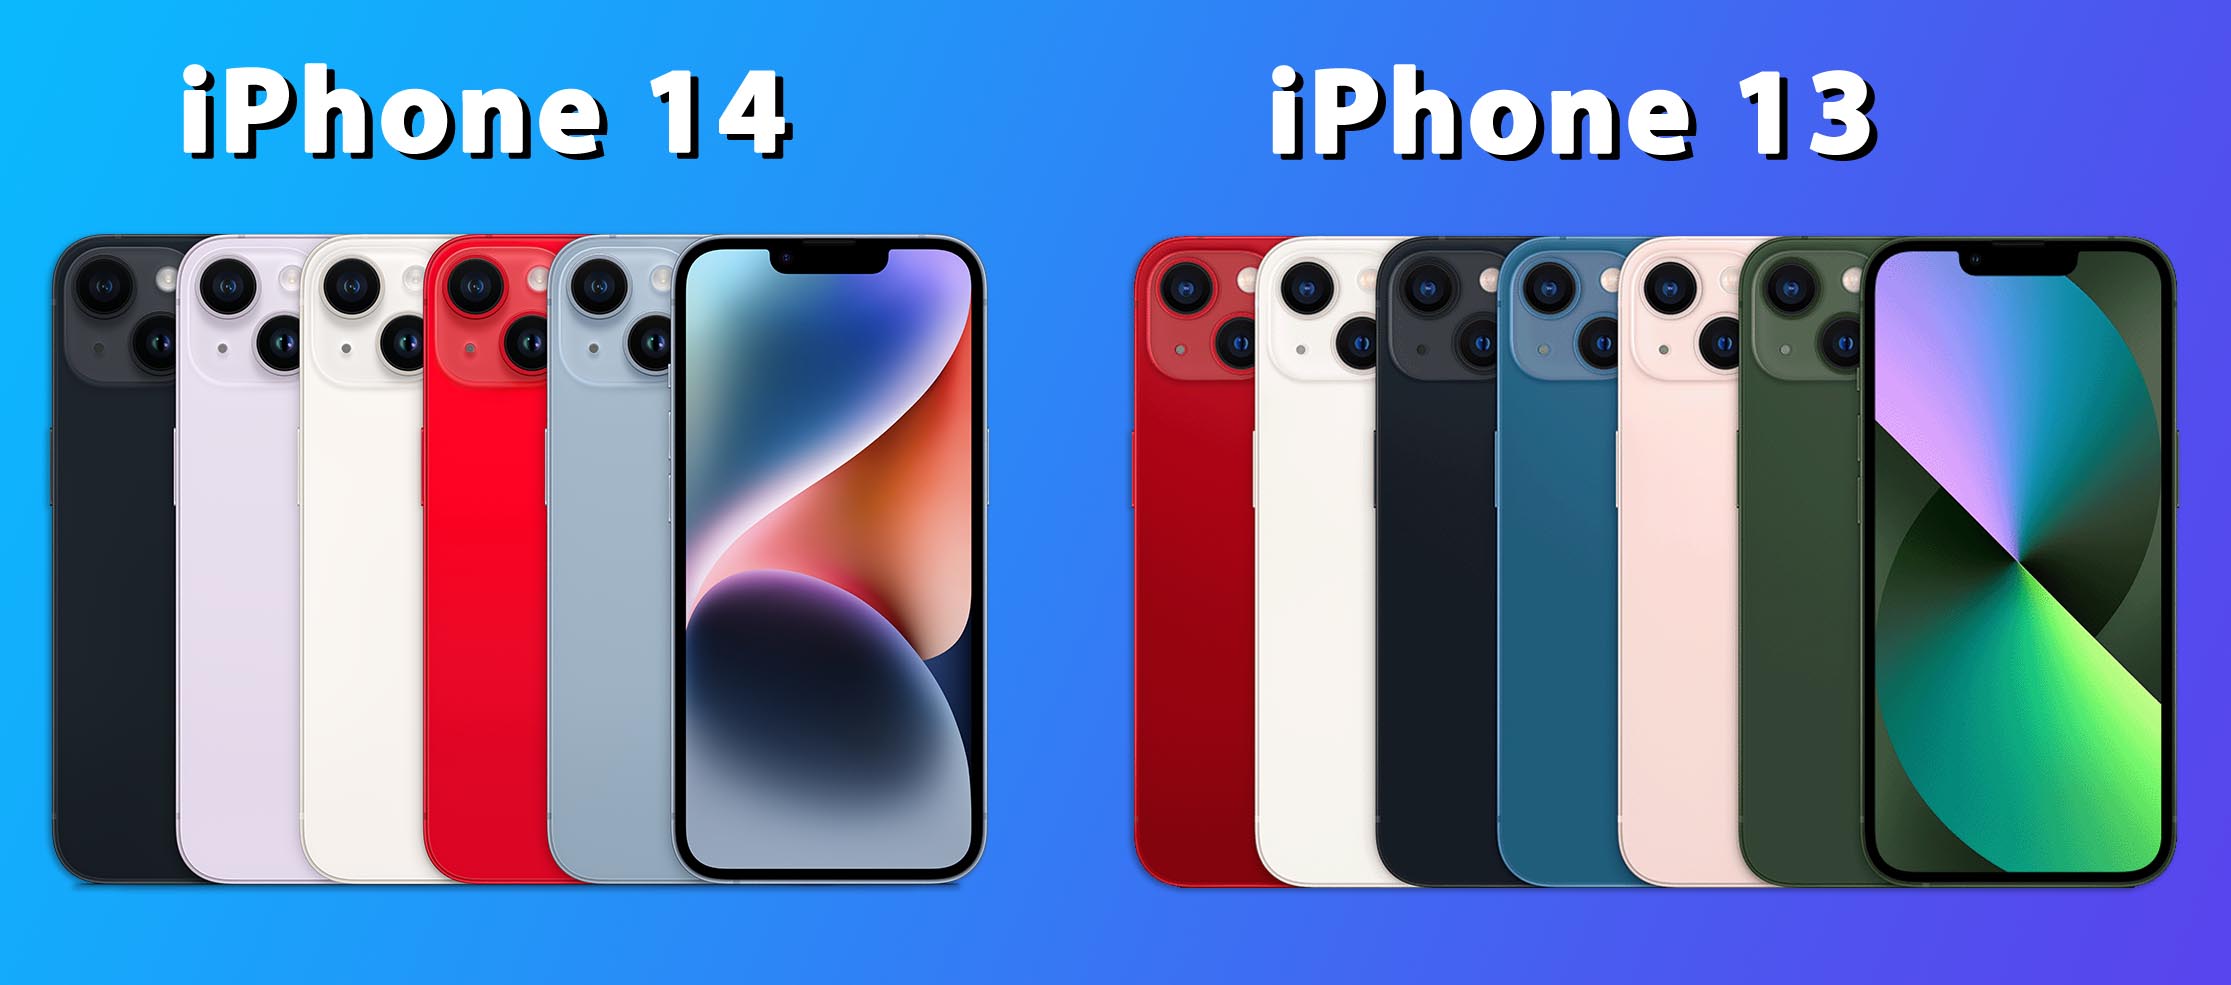 Айфон 13 про сравнить 14 про. Iphone 14 Pro Max расцветки. Iphone 14 Pro Max цвета корпуса. Iphone 14 Pro цвета корпуса. Iphone 13 Pro и iphone 14 Pro.